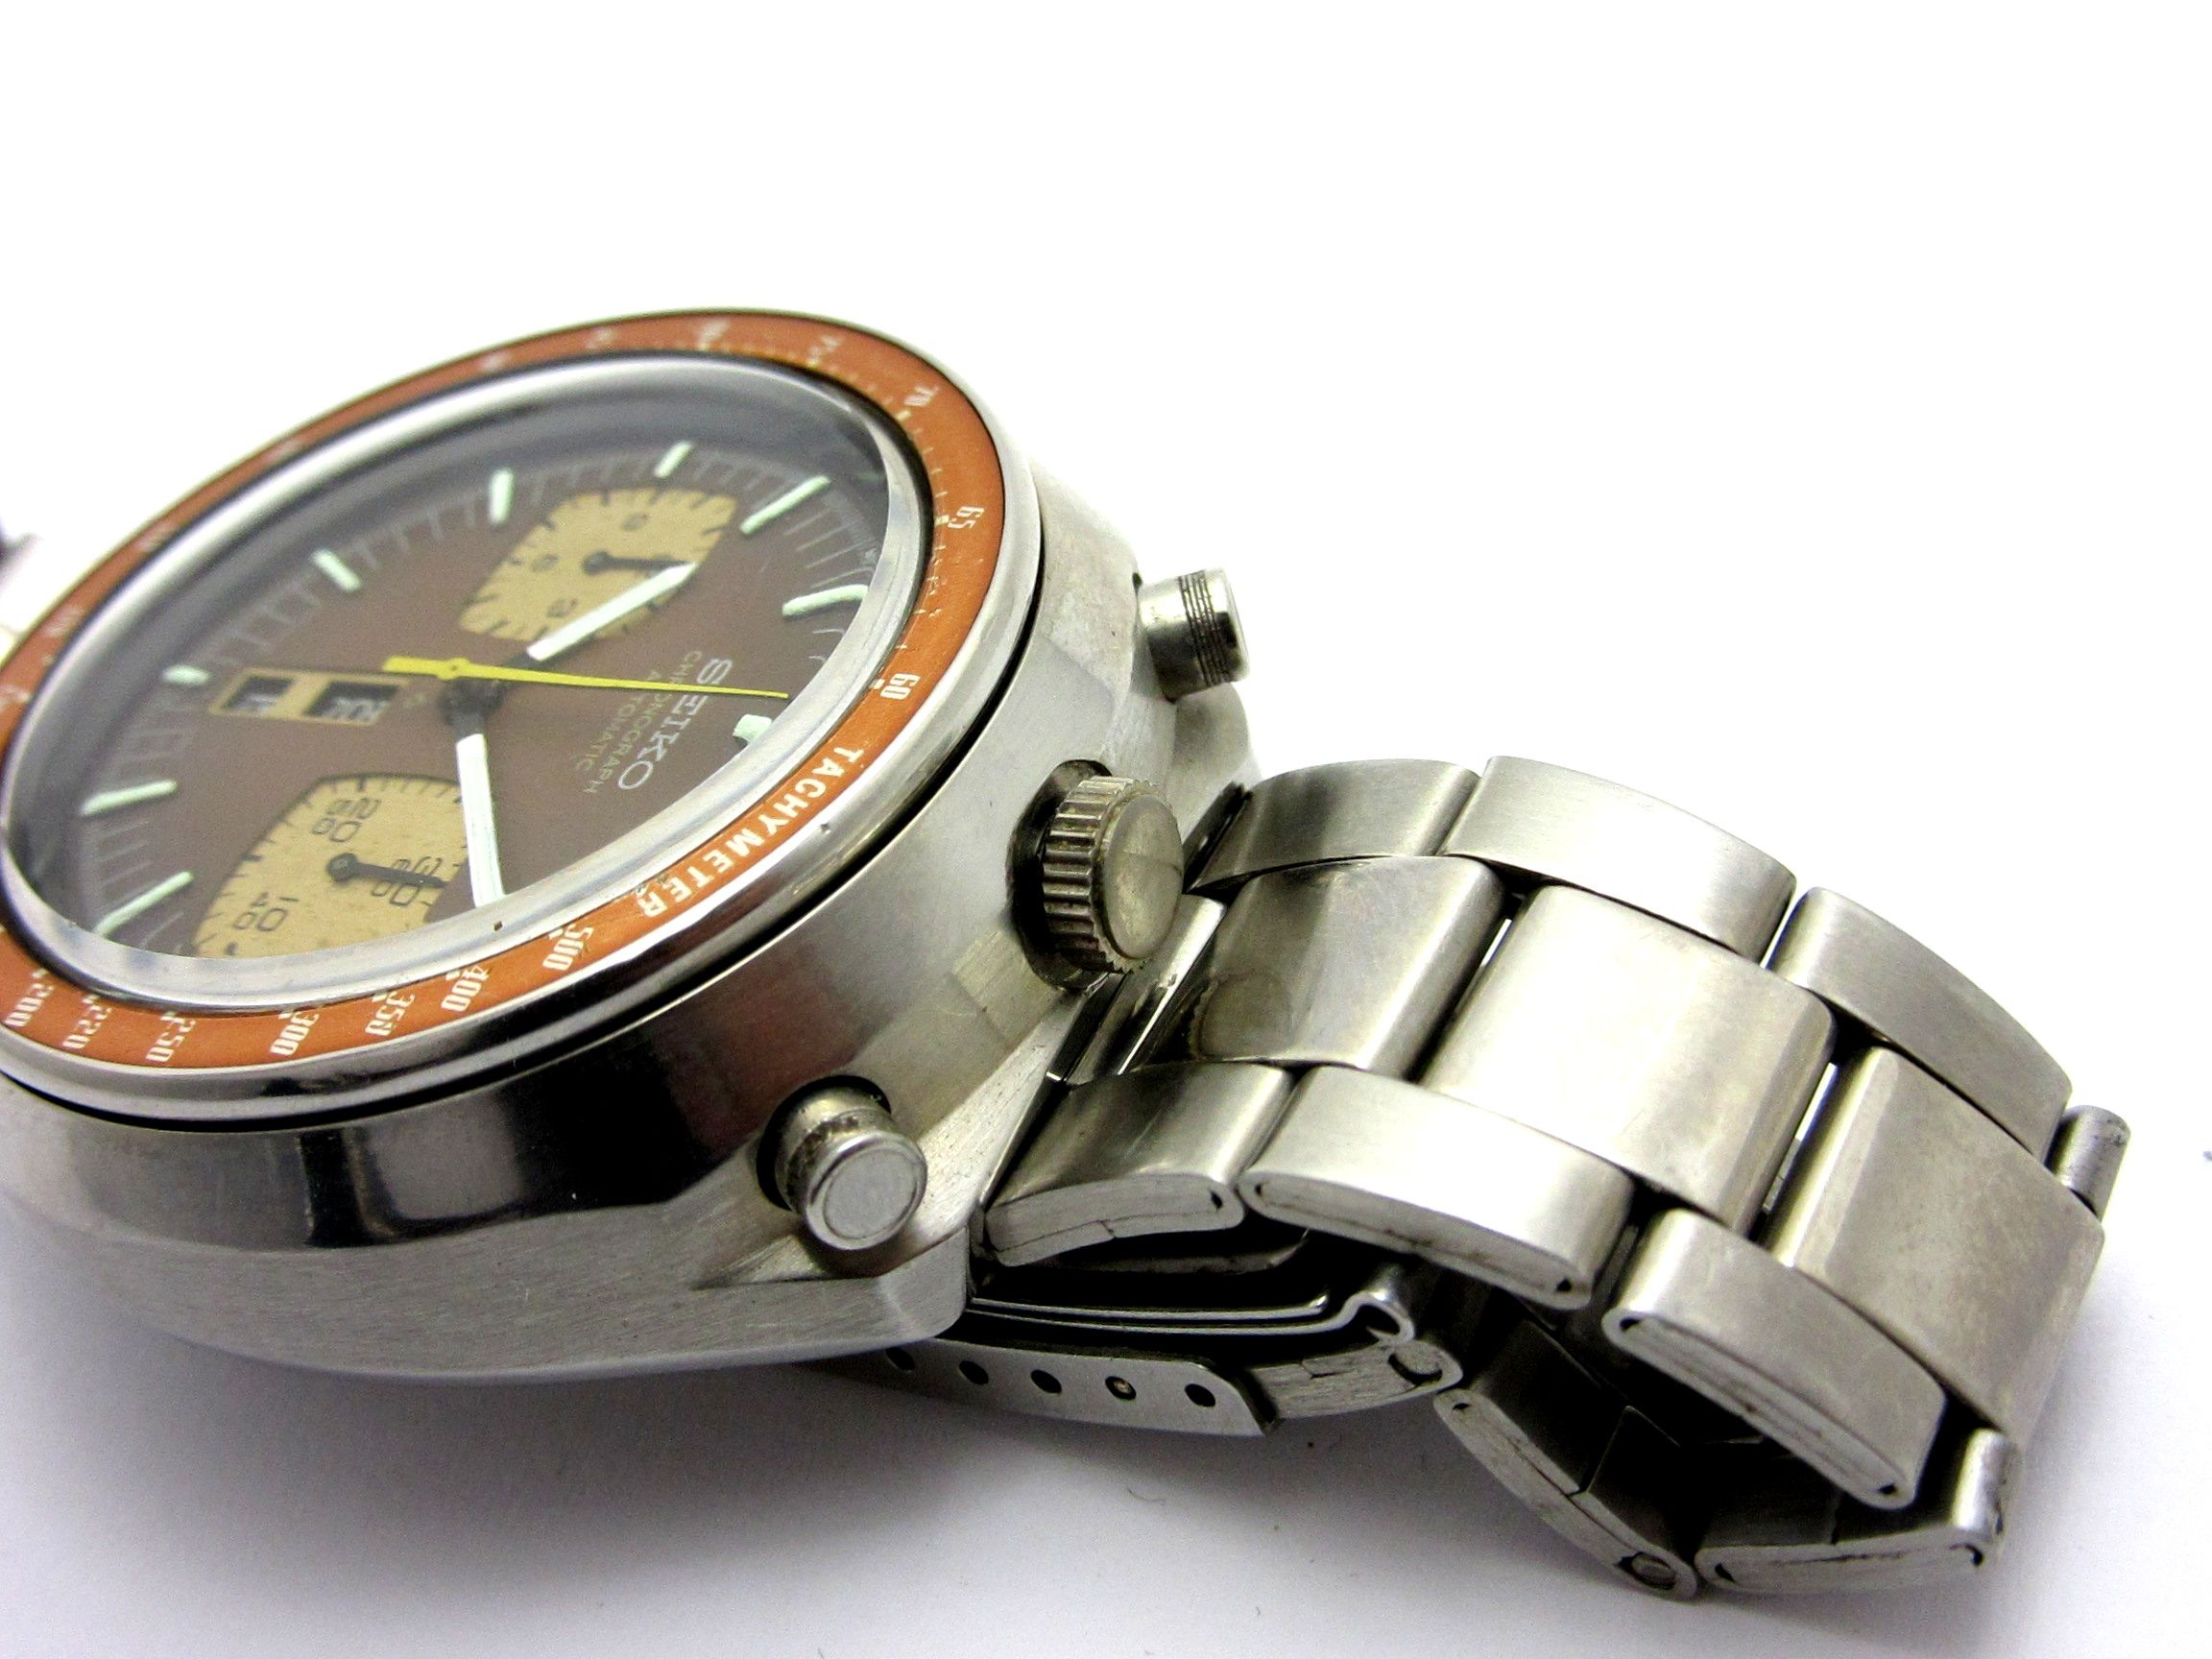 セイコークロノグラフ茶馬(11004) - 腕時計(アナログ)